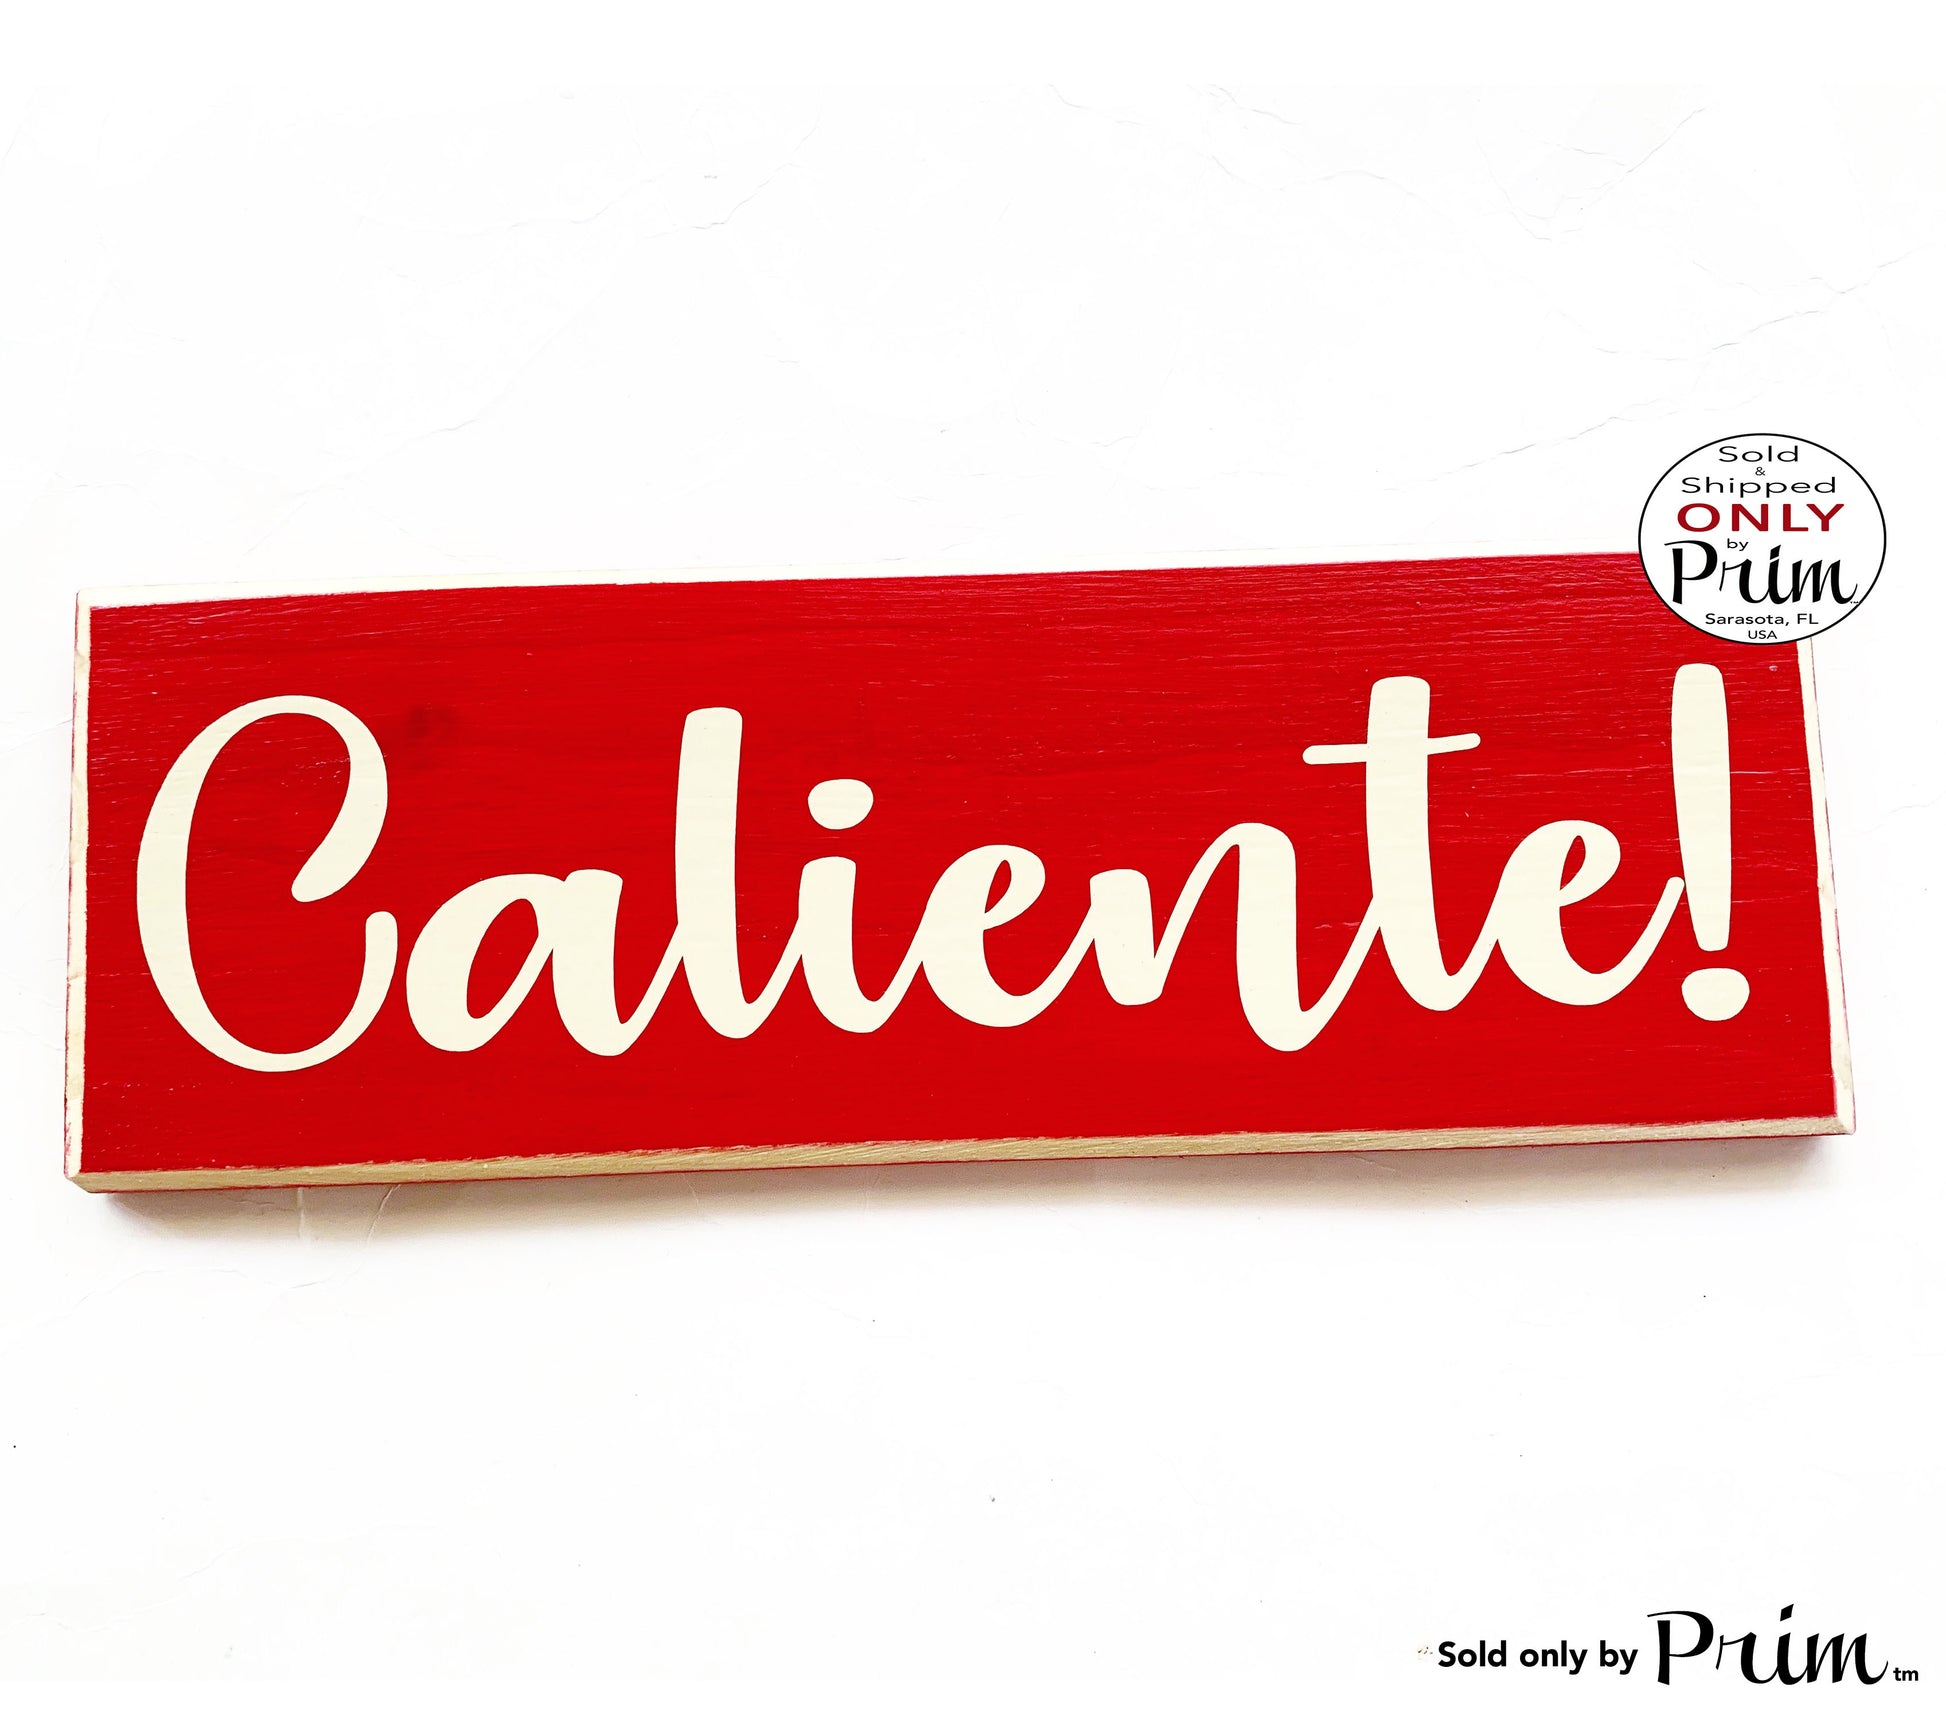 12x4 Caliente! Custom Wood Sign Spanish Hot Kitchen Eat Dining Room Chef Cook Restaurant Wall Decor Hanger Door Plaque